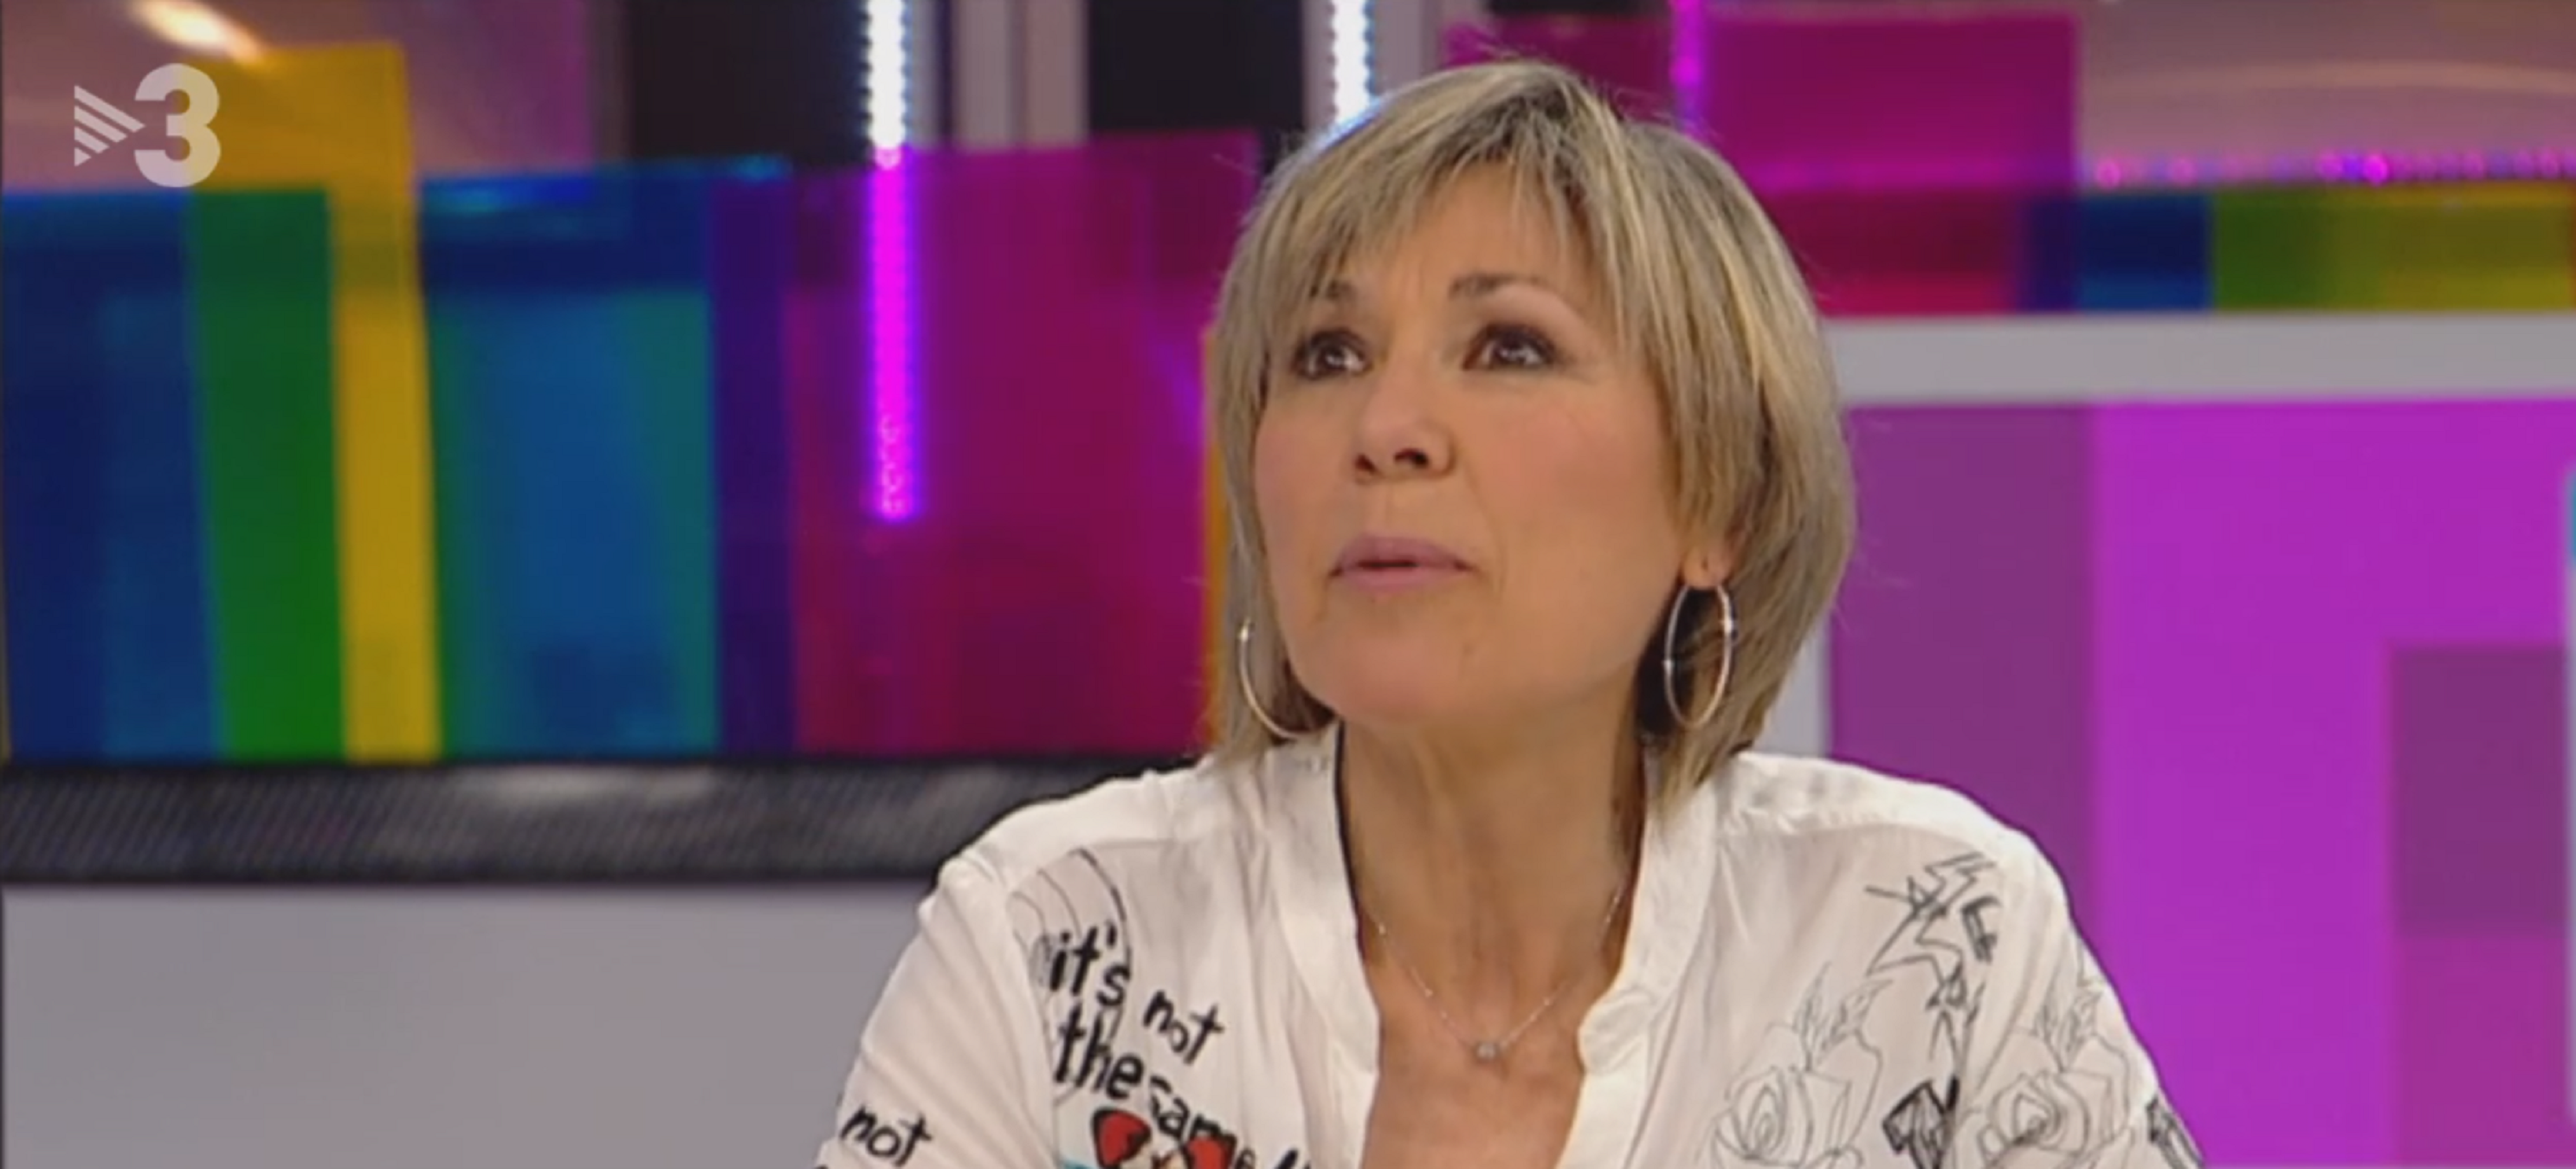 La pena de Mari Pau Huguet amb TV3: "És la meva vida, només sé fer això"